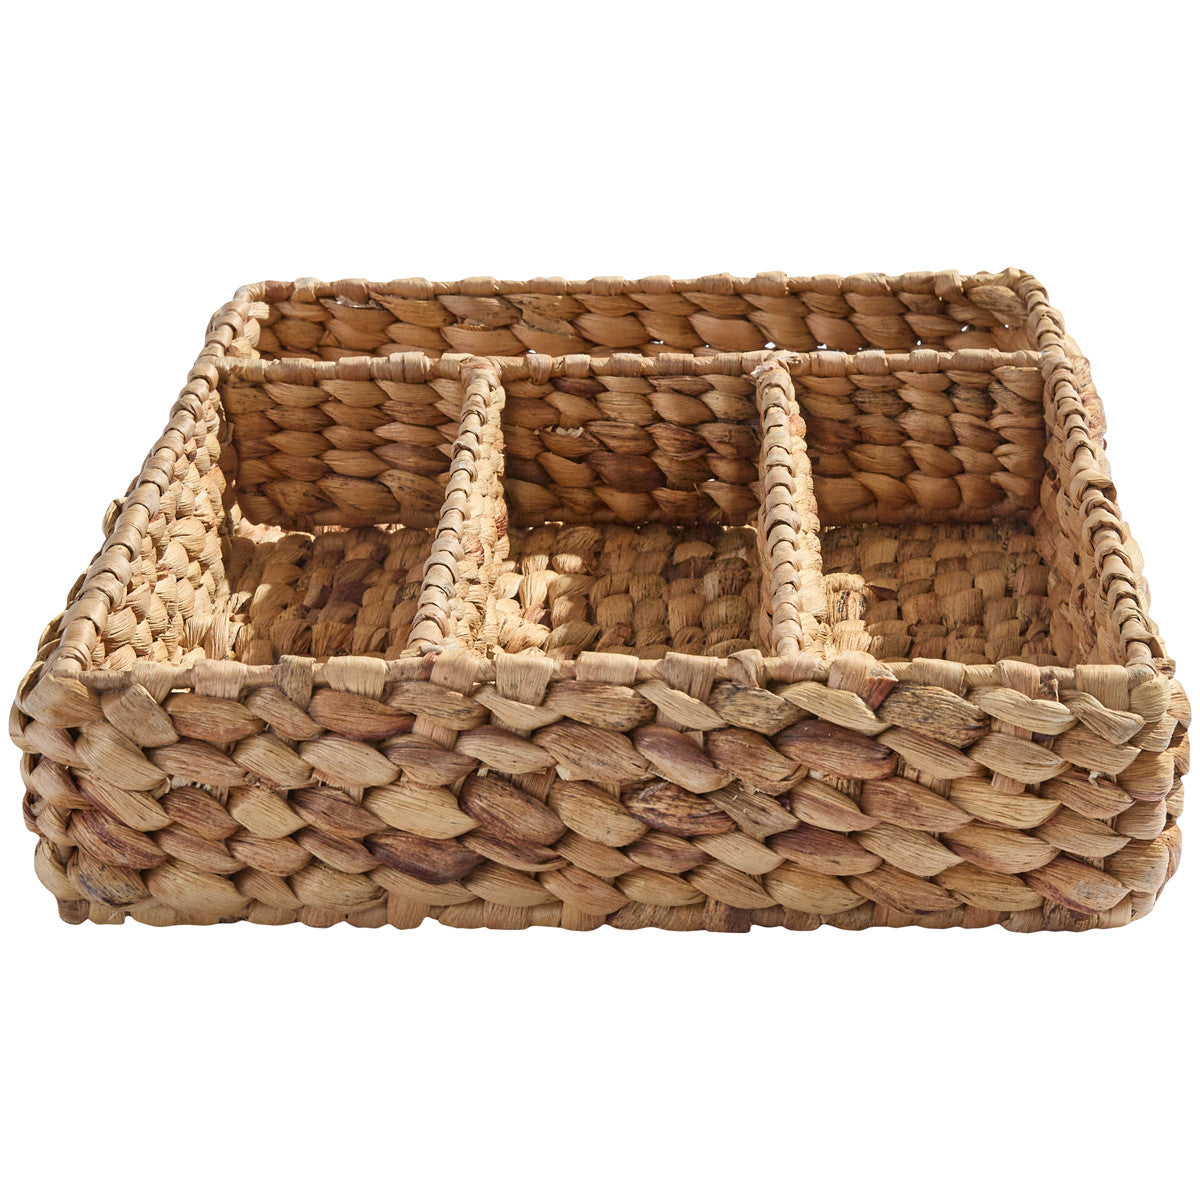 Water Hyacinth Cutlery Basket - Park Designs